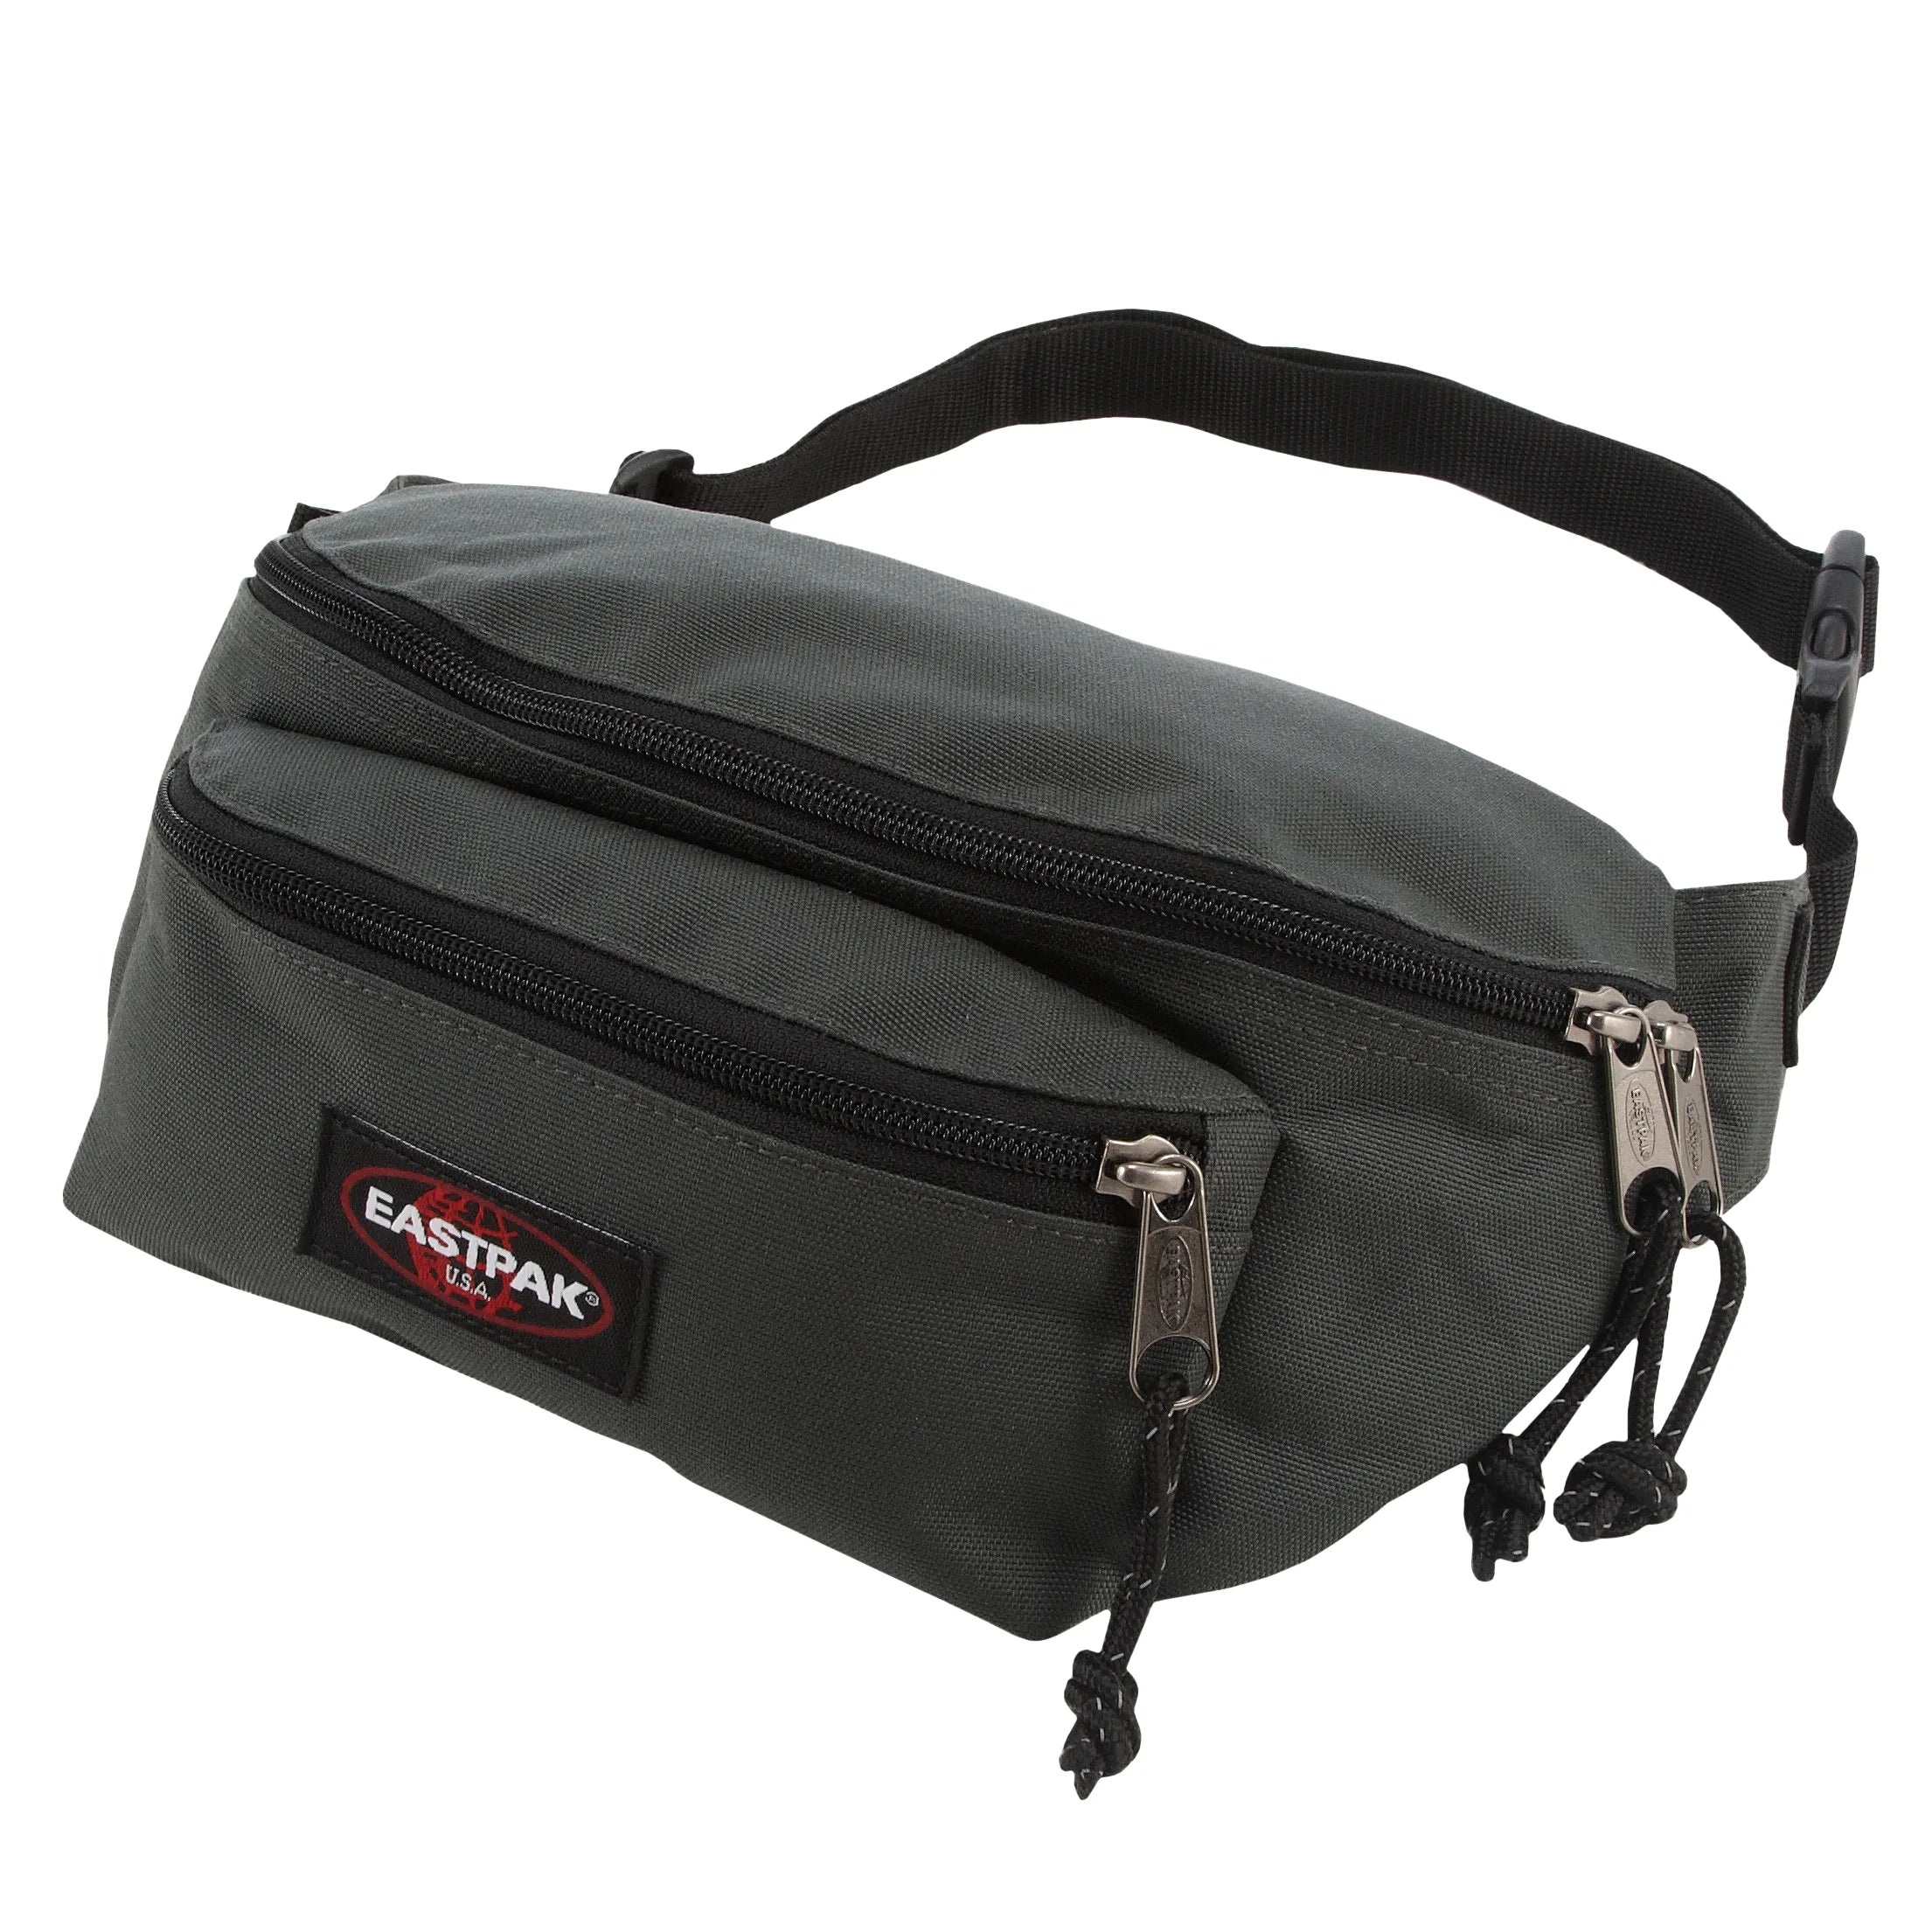 Eastpak Authentic Doggy Bag belt bag 25 cm - black denim